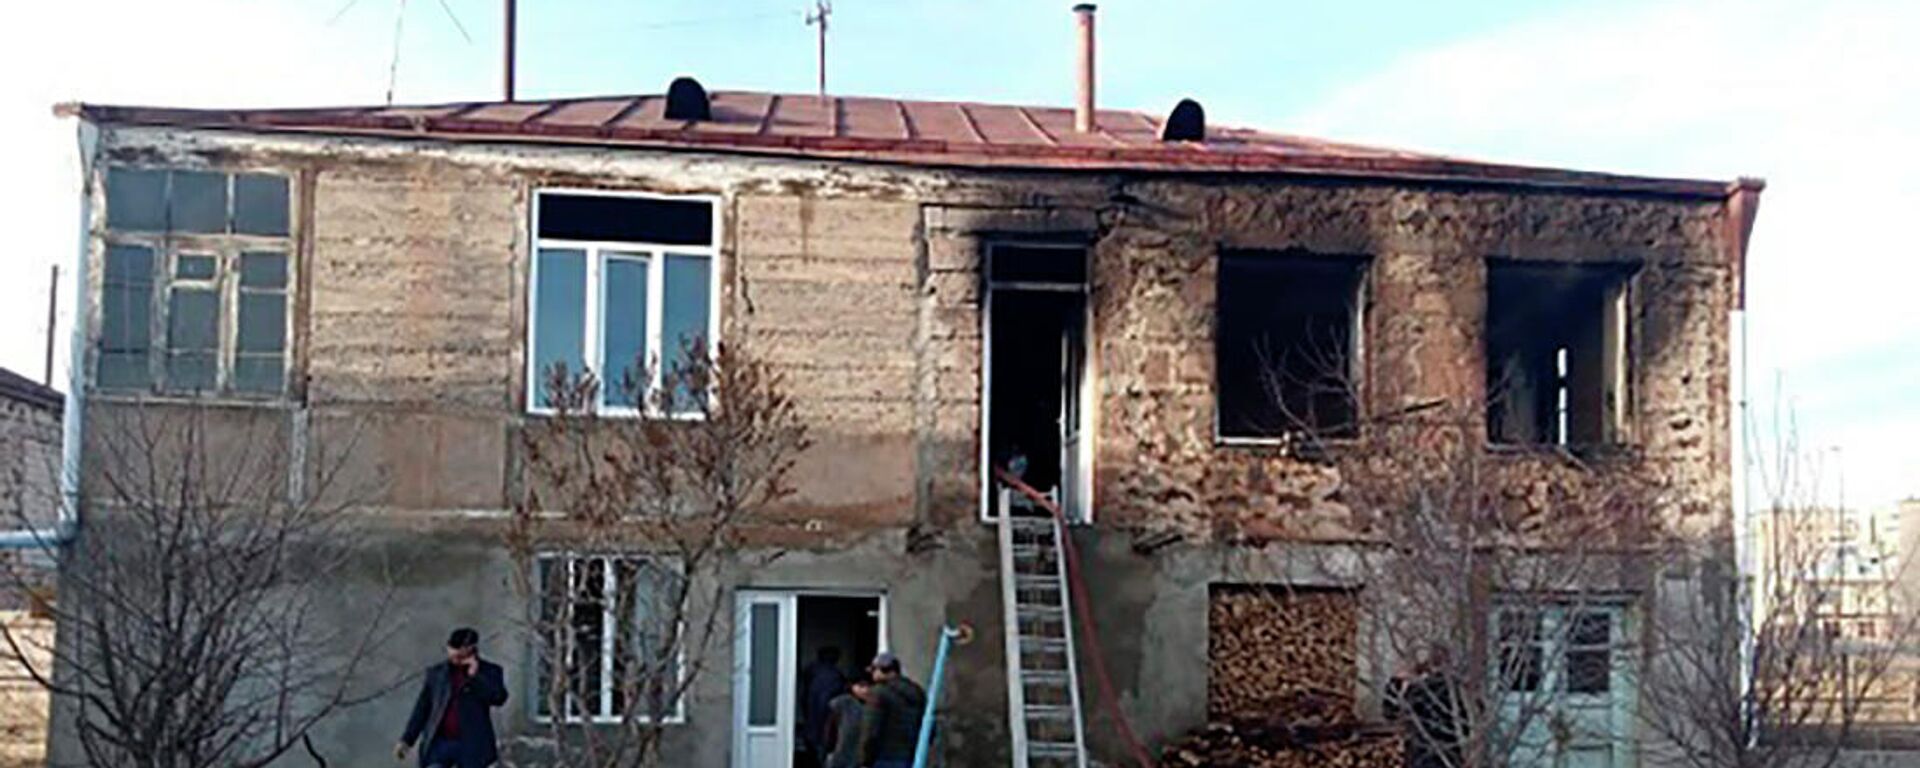 Пожар в жилом доме в Гаваре - Sputnik Армения, 1920, 12.12.2021